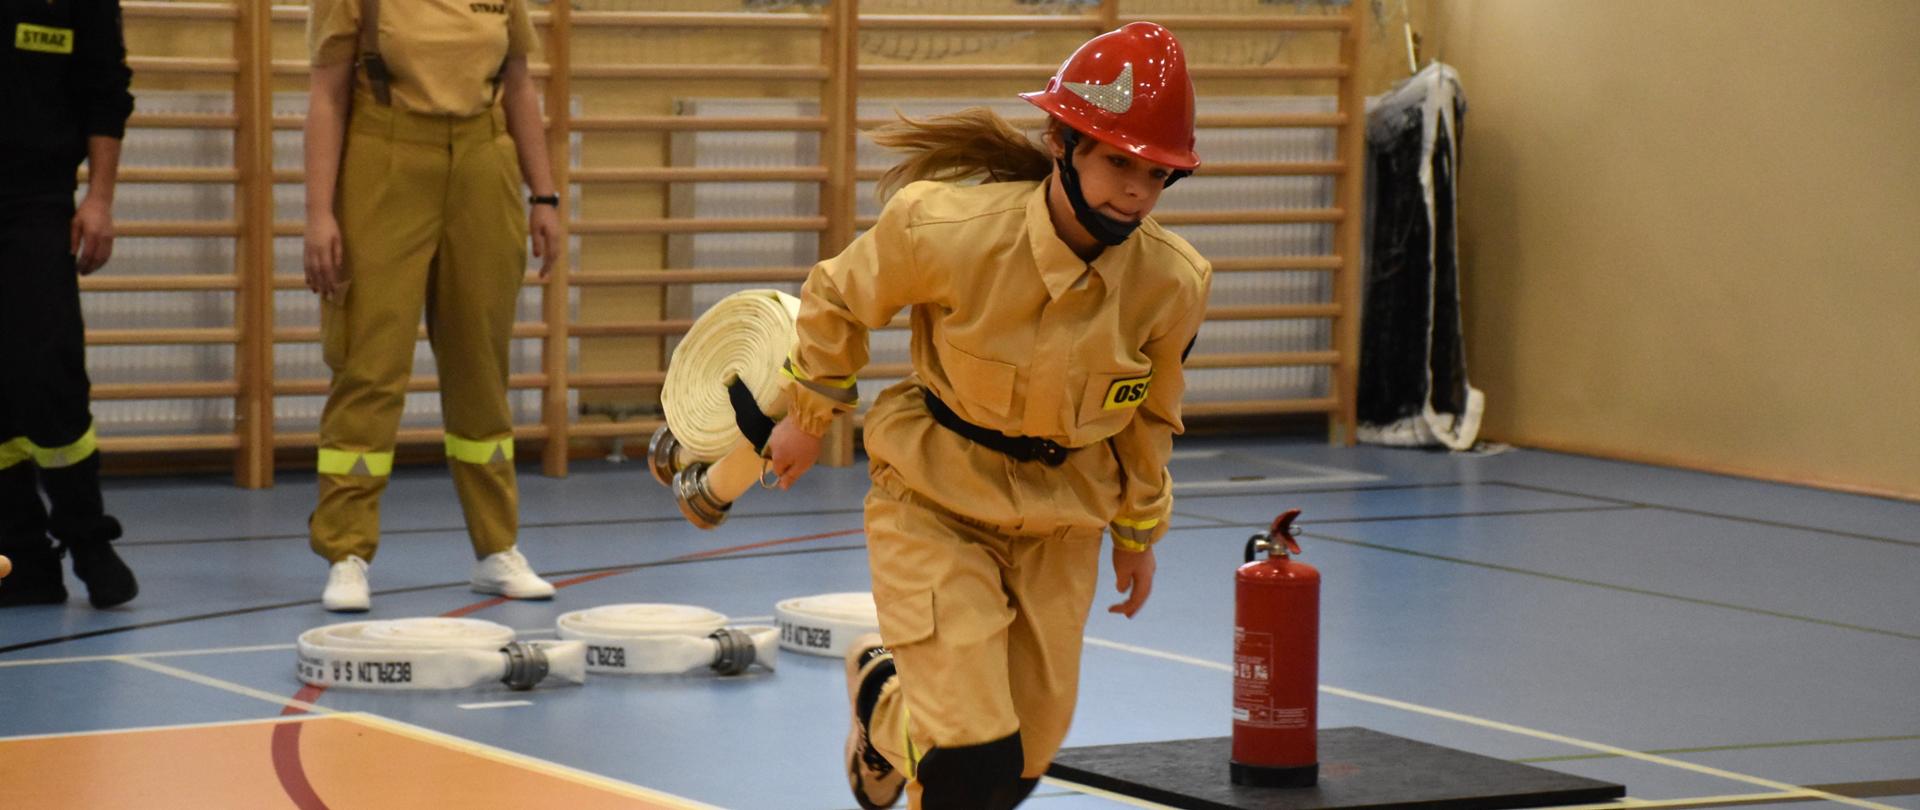 Dziewczynka z Młodzieżowej Drużyny Pożarniczej podczas konkurencji, biegnie po torze trzymając w lewym ręku odcinek węża strażackiego z noszakiem, w tle obserwujący wykonanie zadania druhna i sędzia